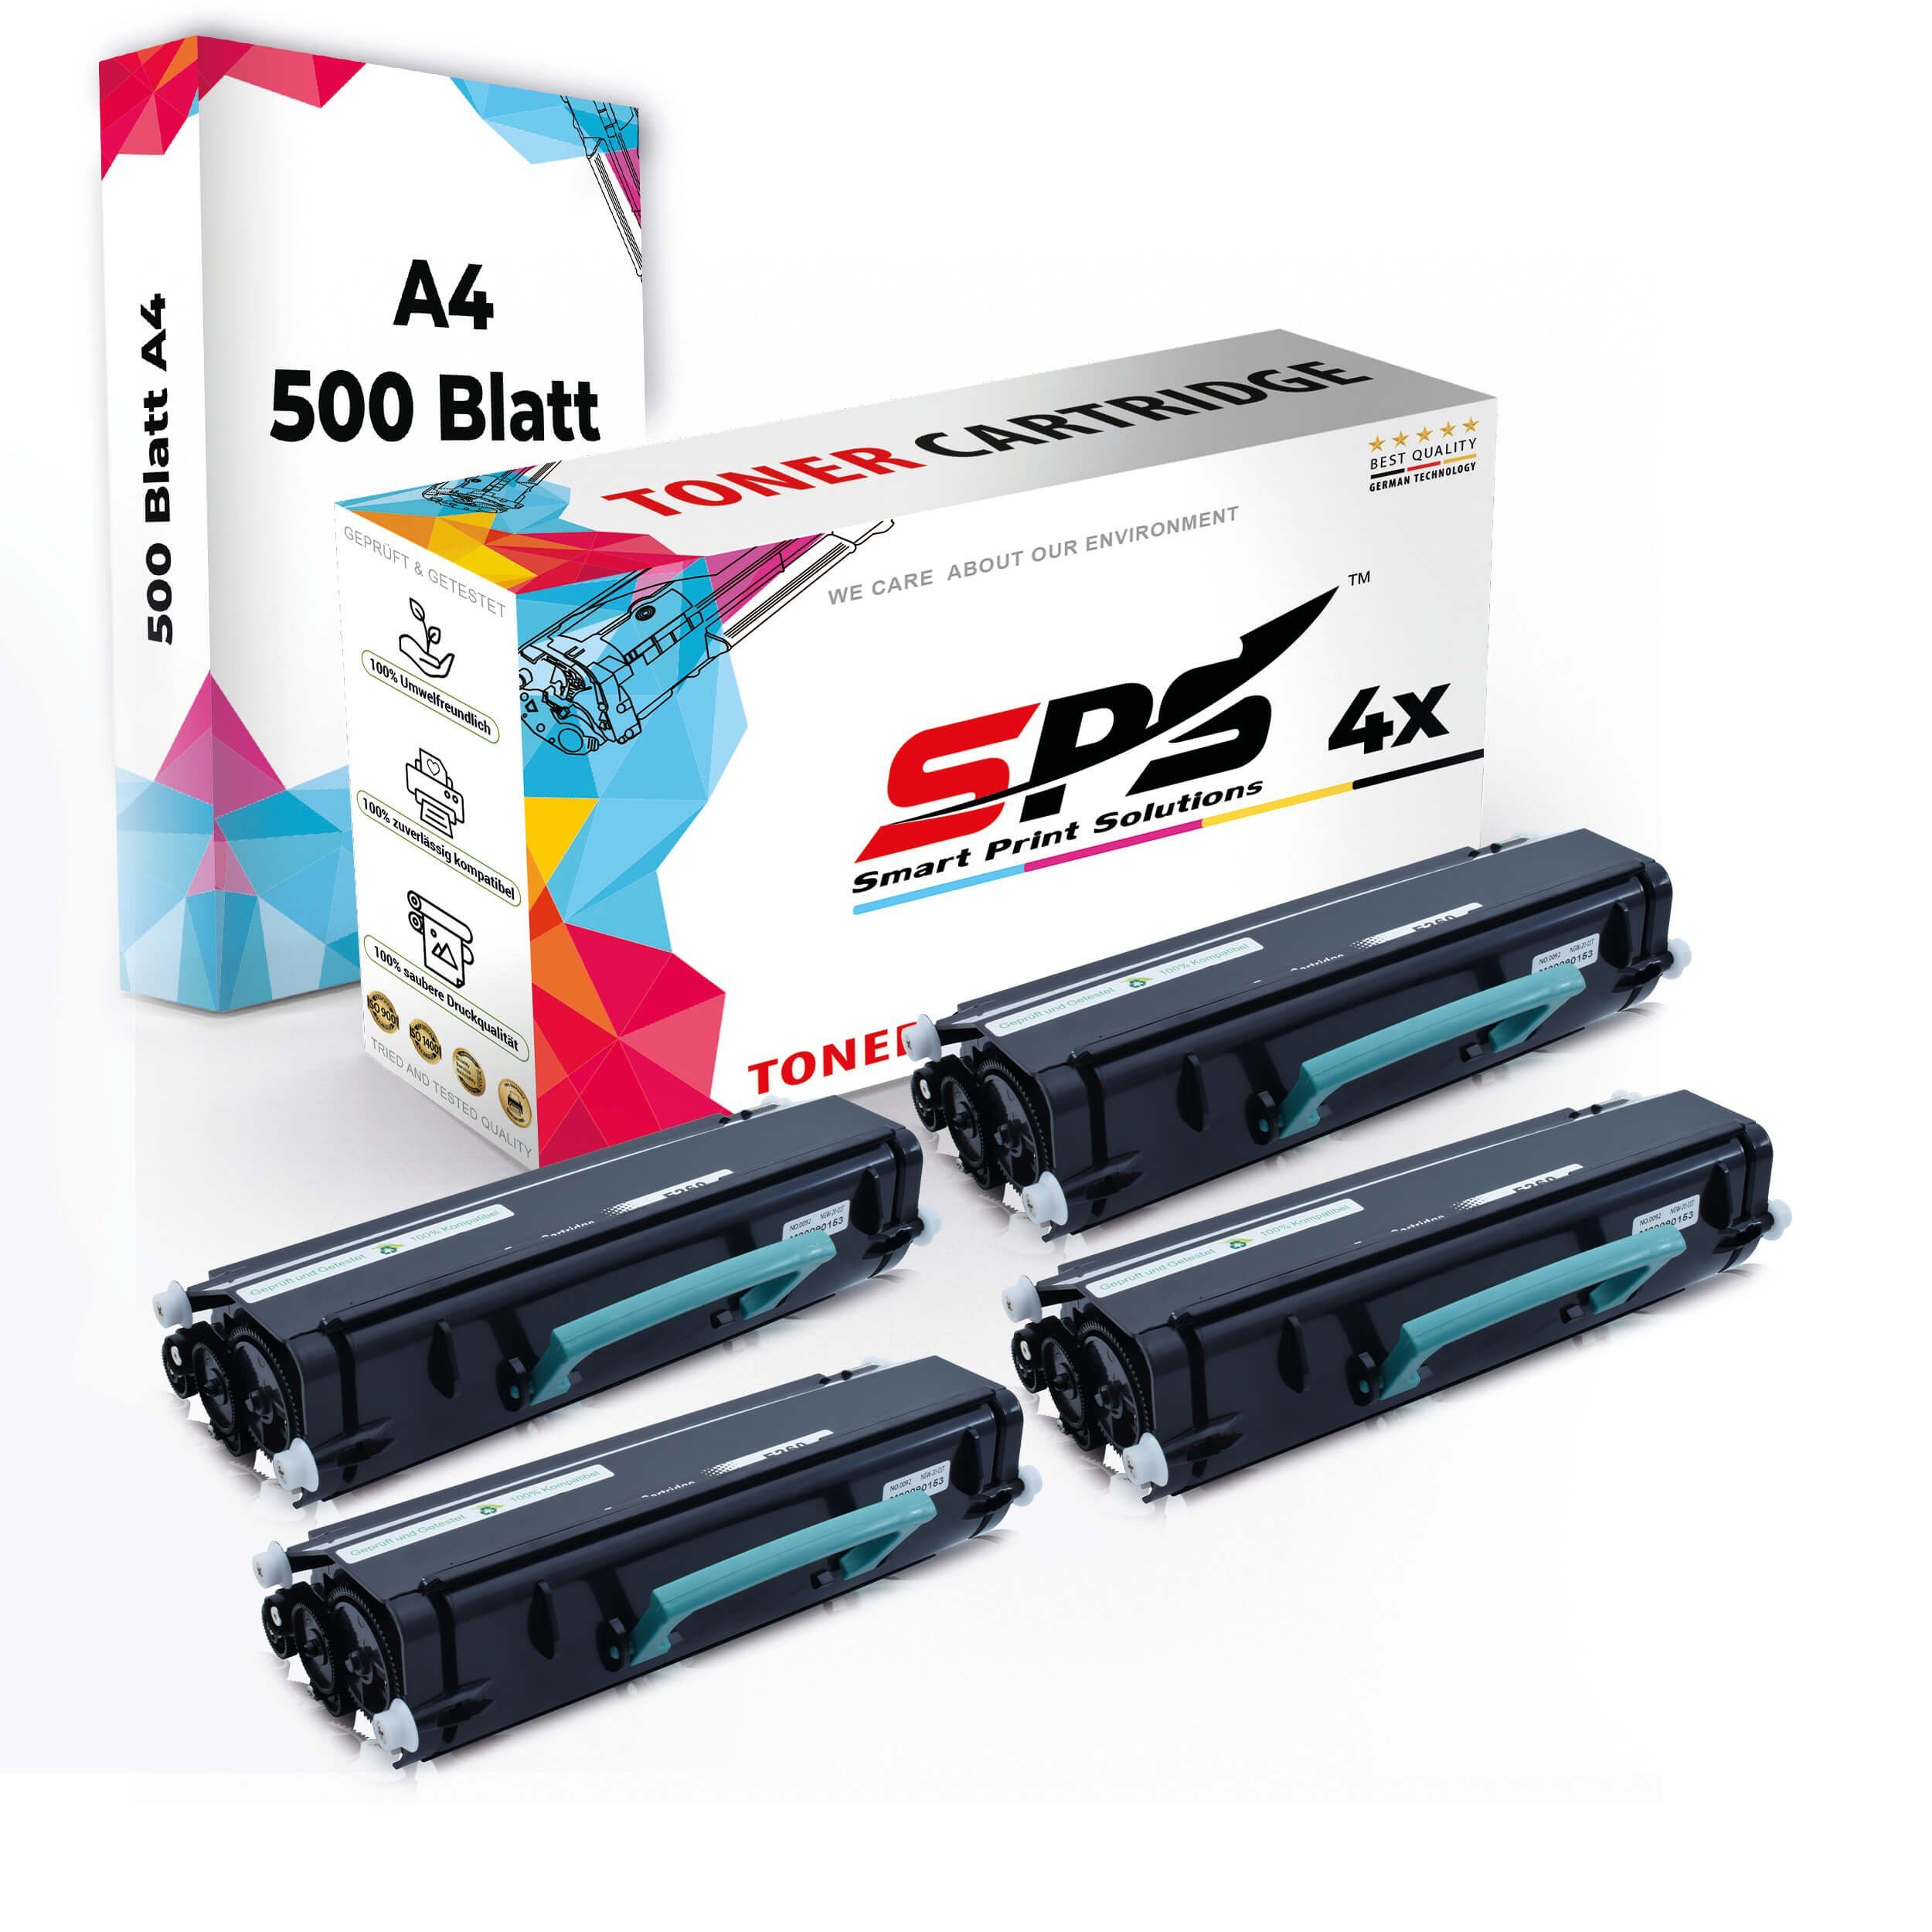 SPS Tonerkartusche Druckerpapier Set + 4x Toner,1x A4 4x Multipack Pack, A4 Kompatibel, (4er Druckerpapier)